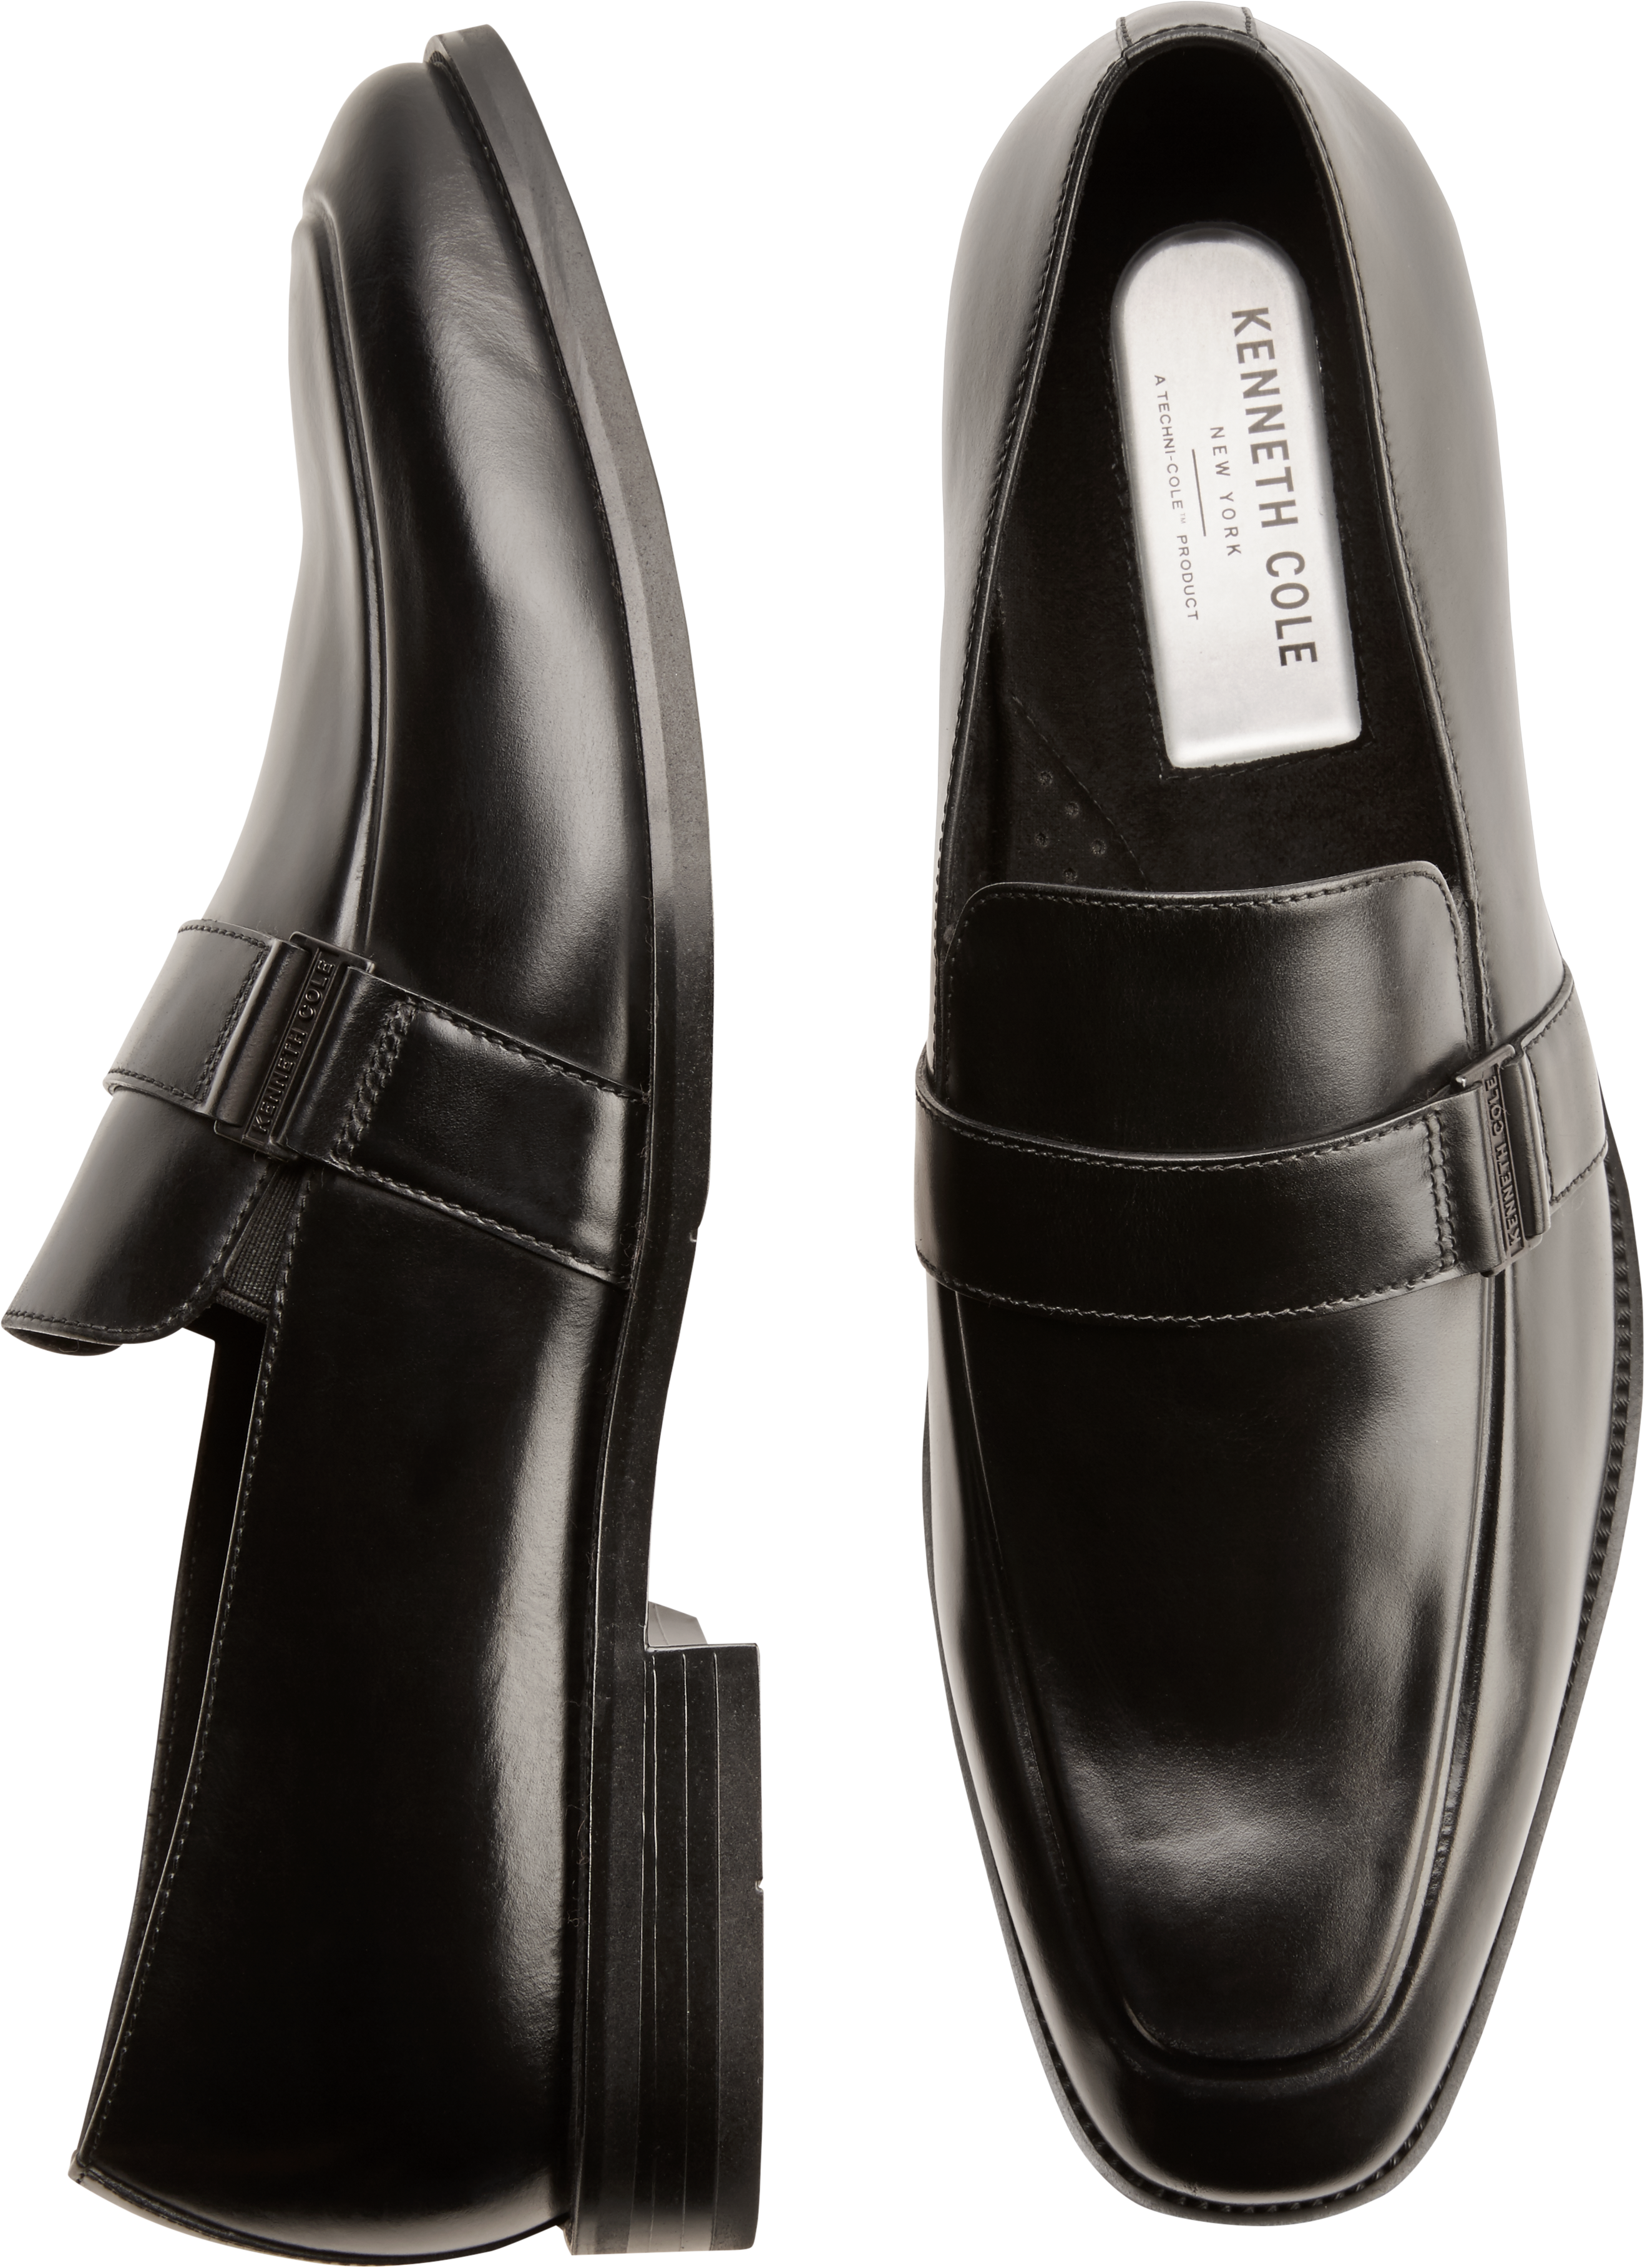 Kenneth Cole TECHNI-COLE Black Loafers - Men's Dress Shoes | Men's ...